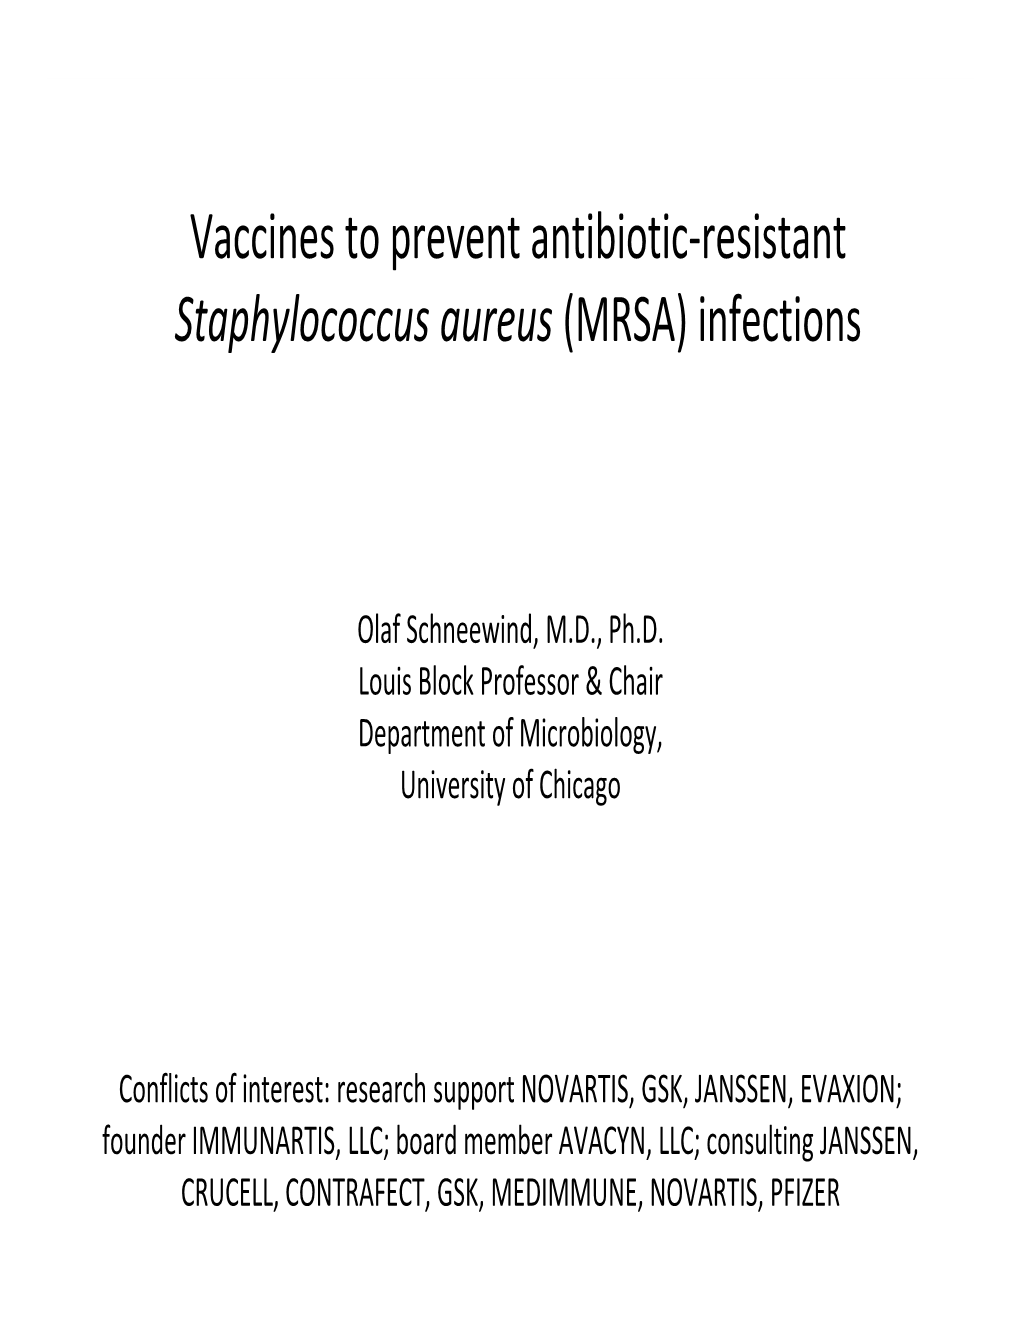 Vaccines to Prevent Antibiotic Resistant Staphylococcus Aureus (MRSA)